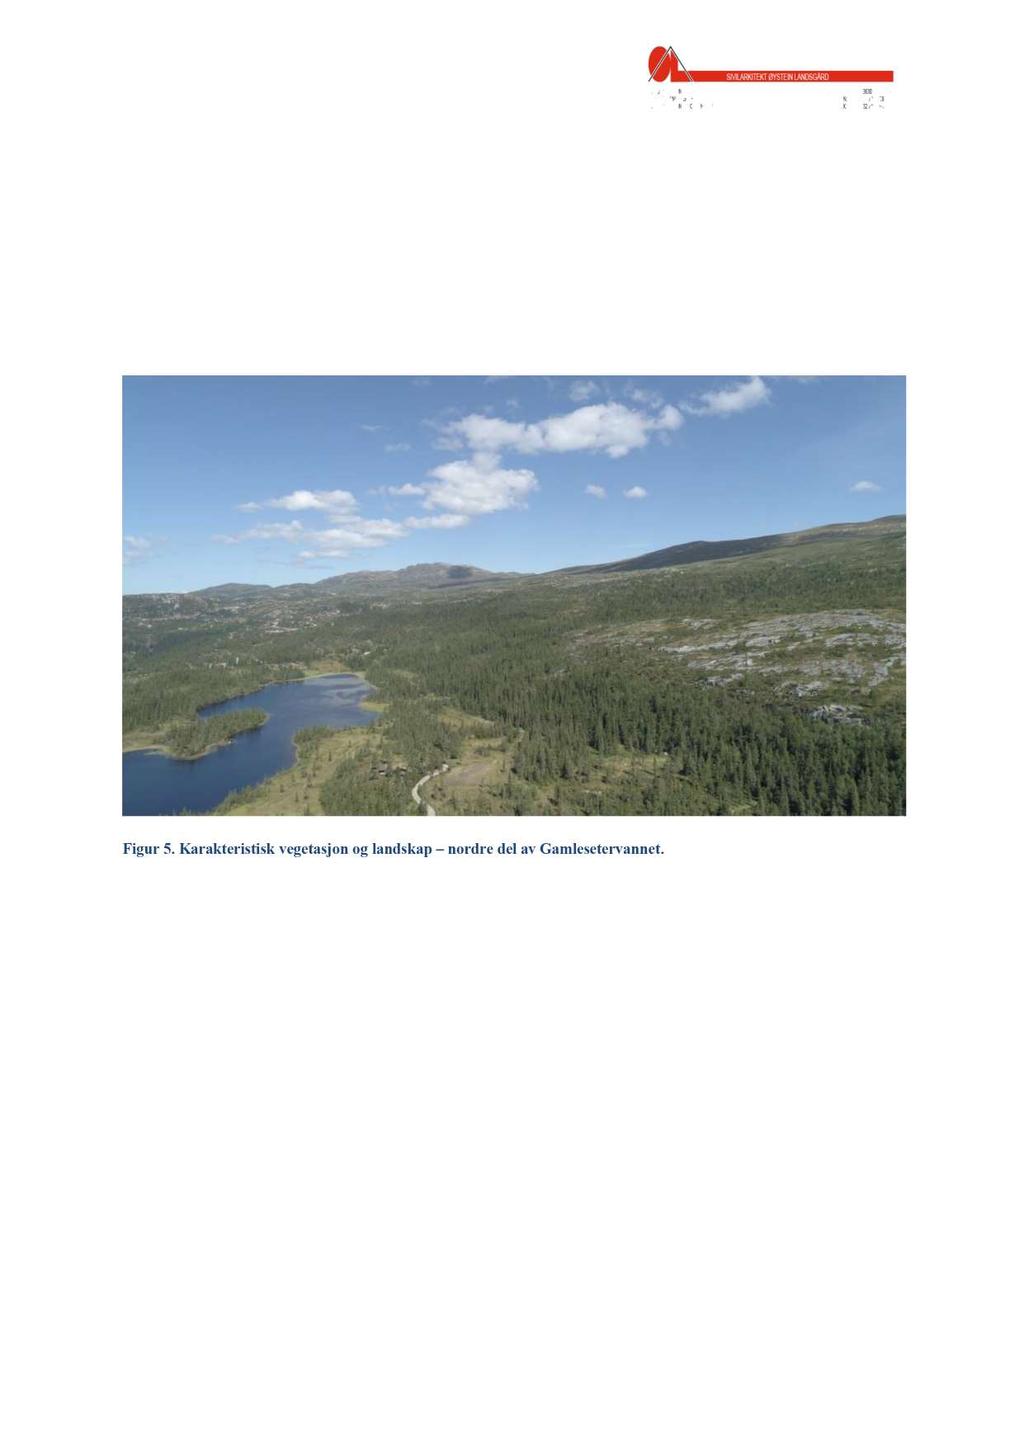 4.3 Landskap, geologi og vegetasjon I følge Norsk institutt for bioøkonomi (NIBIO) er planområdet en del av landskapsregionen «Fjellskogen i Sør - N orge» hvor vegetasjonen i hovedsak er gran, med